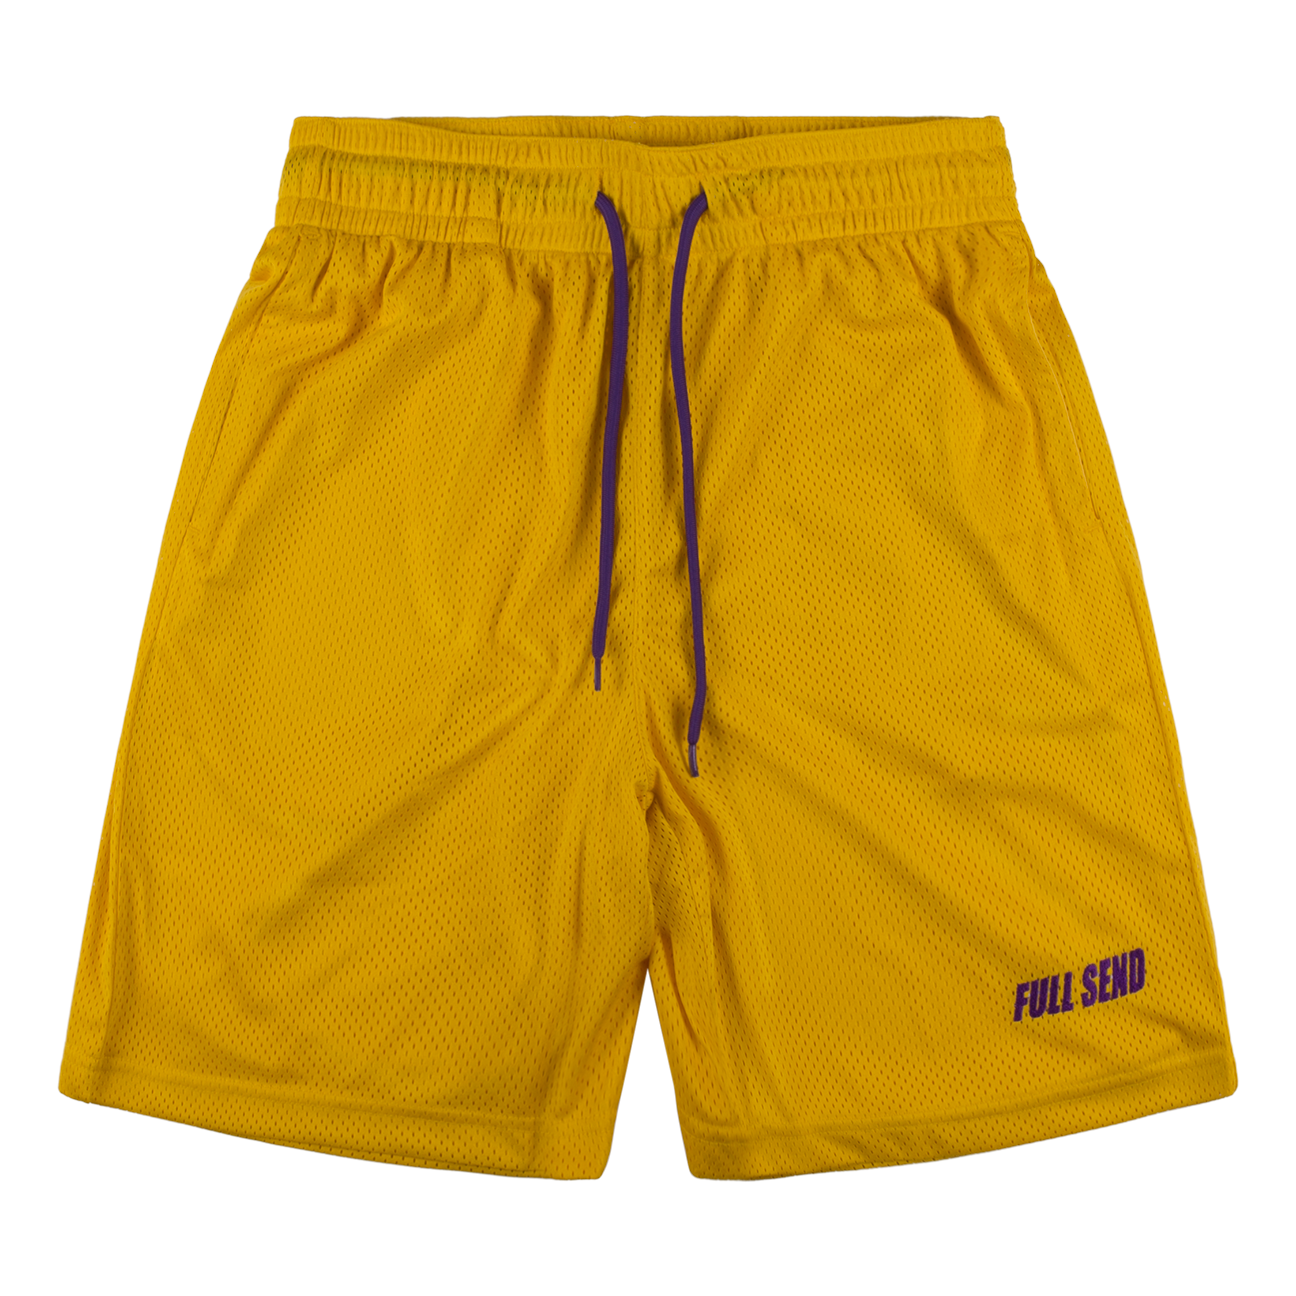 FS Sportswear Mesh Shorts | FULL SEND by NELK